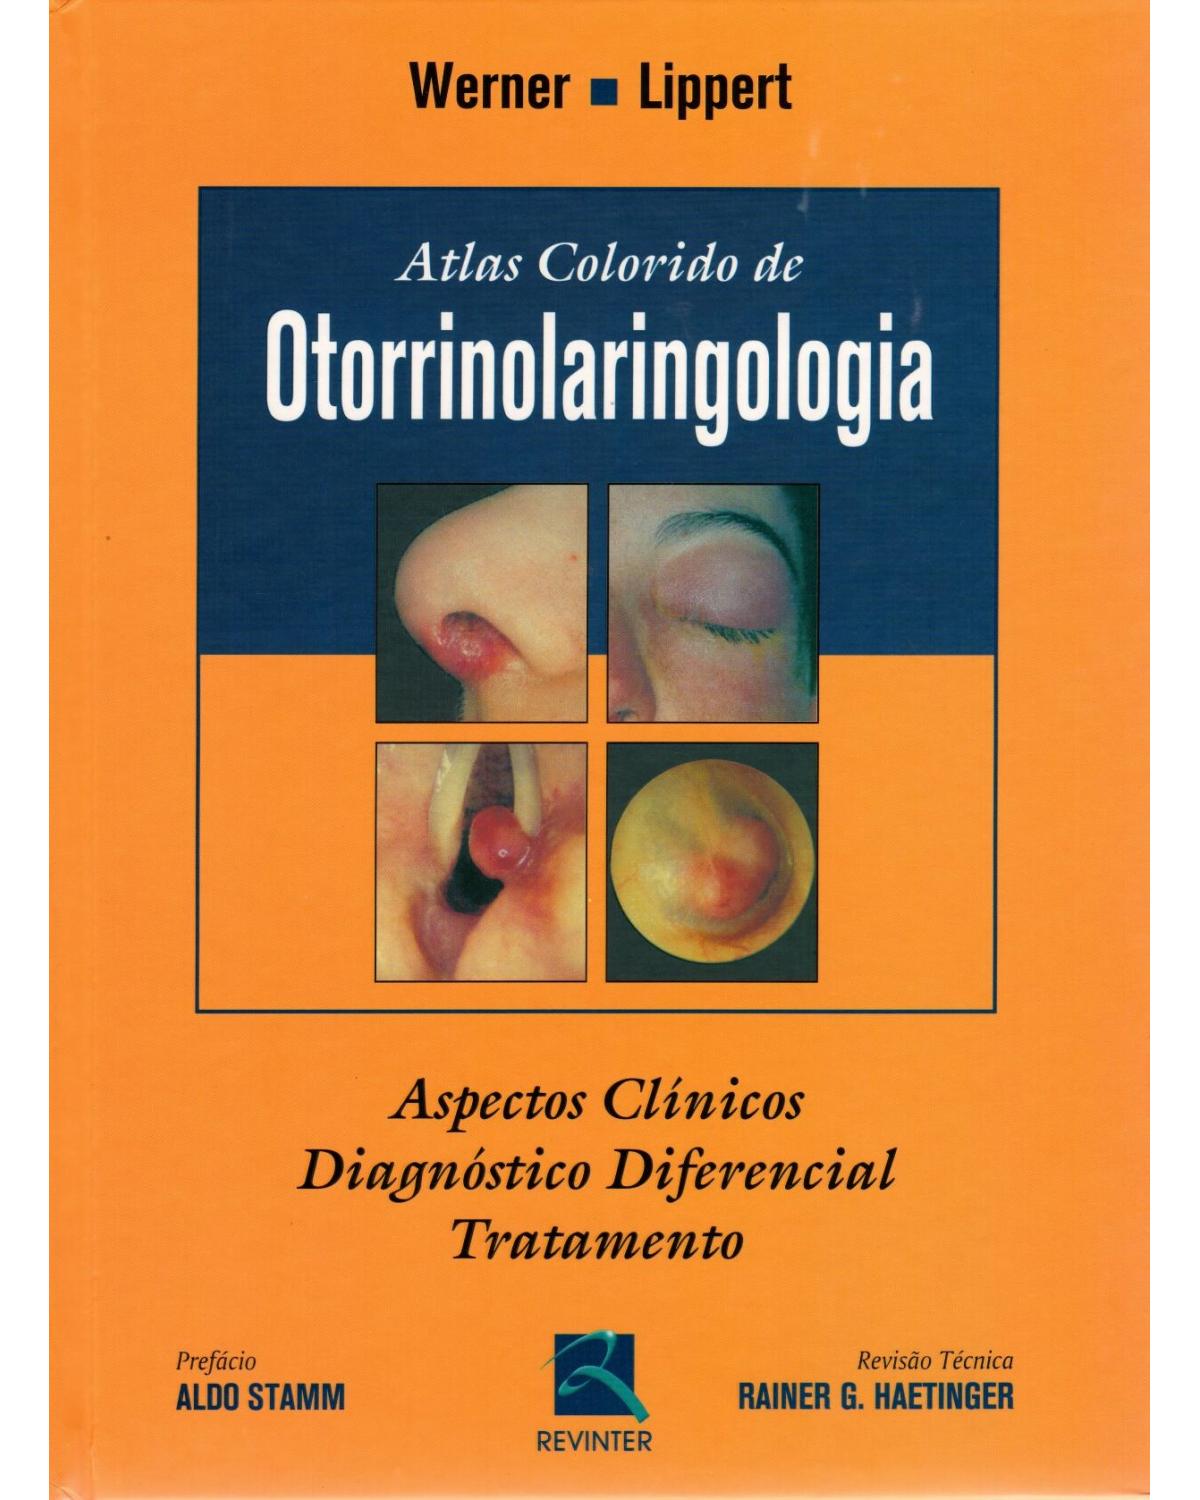 Atlas colorido de otorrinolaringologia: Aspectos clínicos, diagnóstico diferencial e tratamento - 1ª Edição